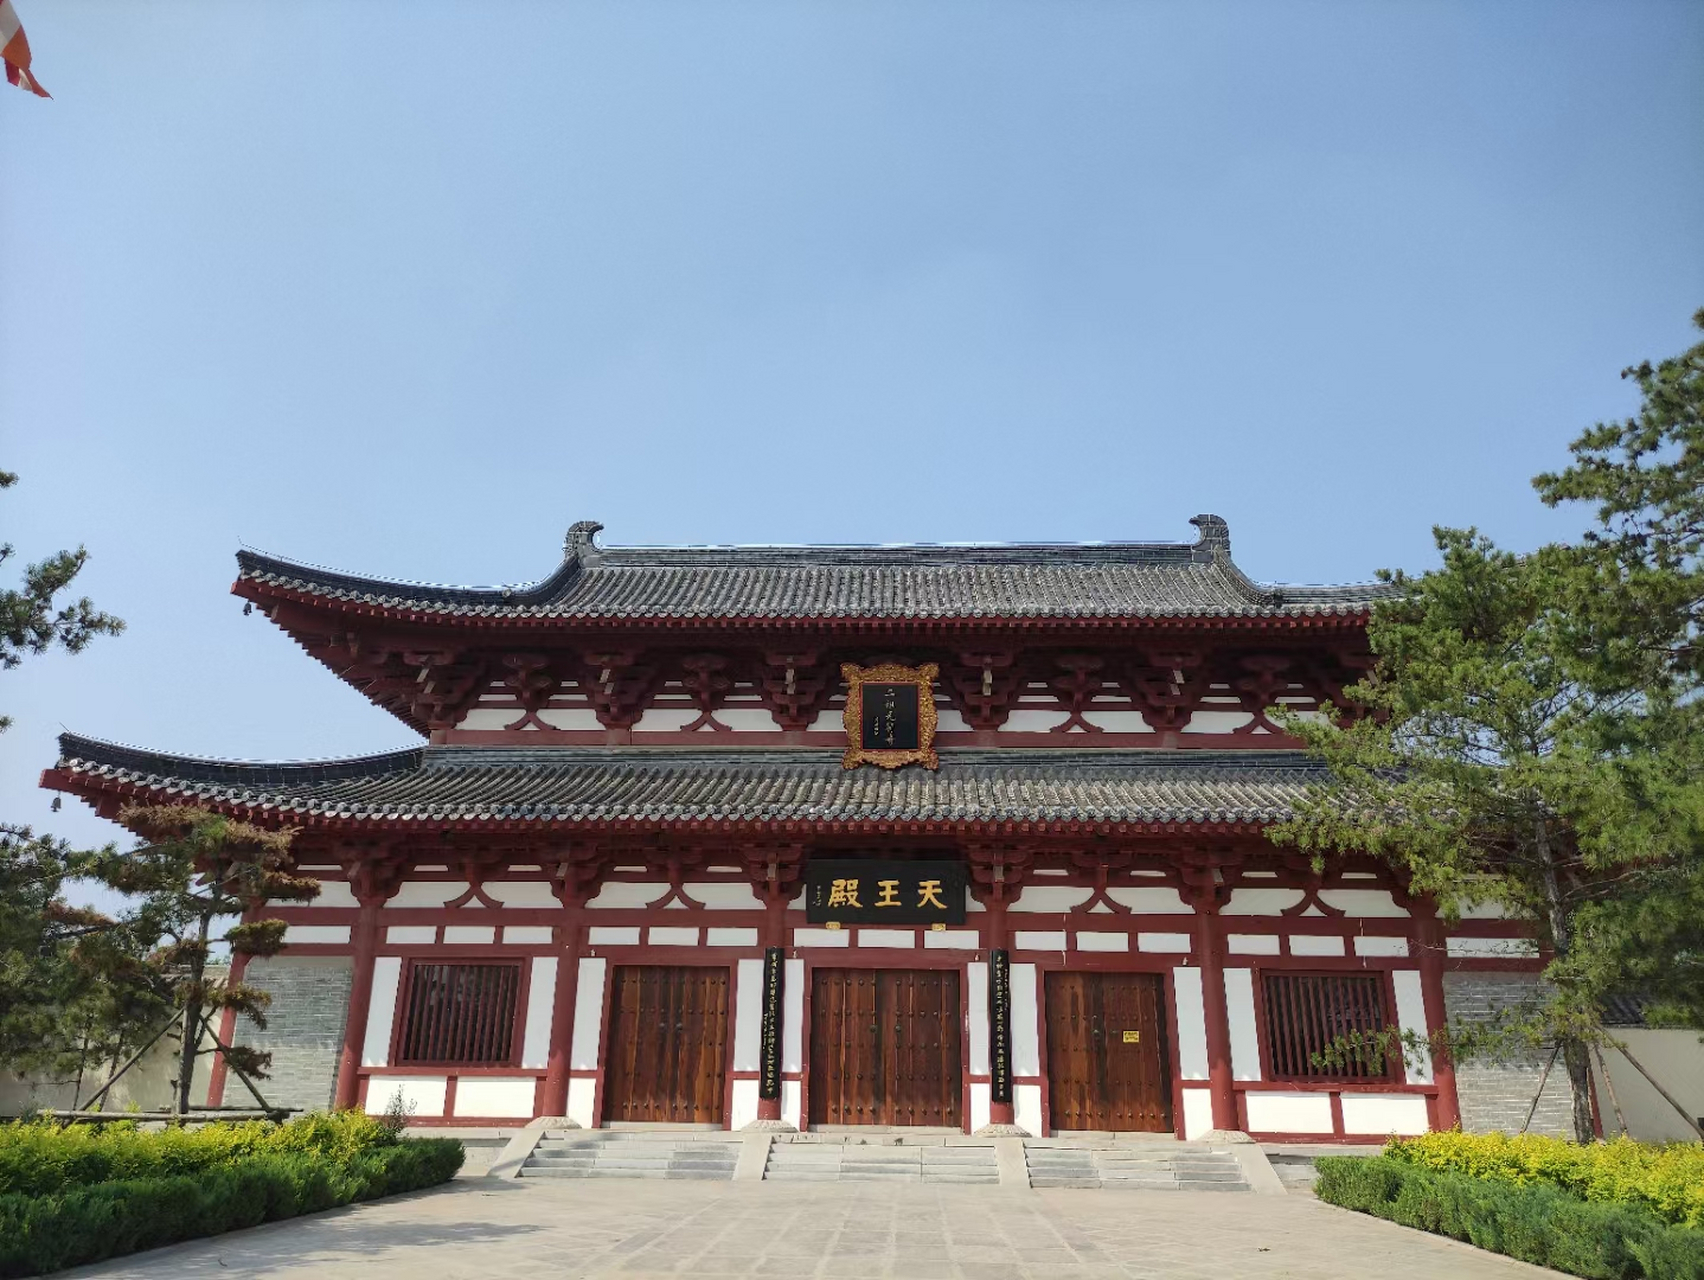 二祖禅寺,千年古禅寺,位于河北省邯郸市成安县境内,始建于唐贞观十六